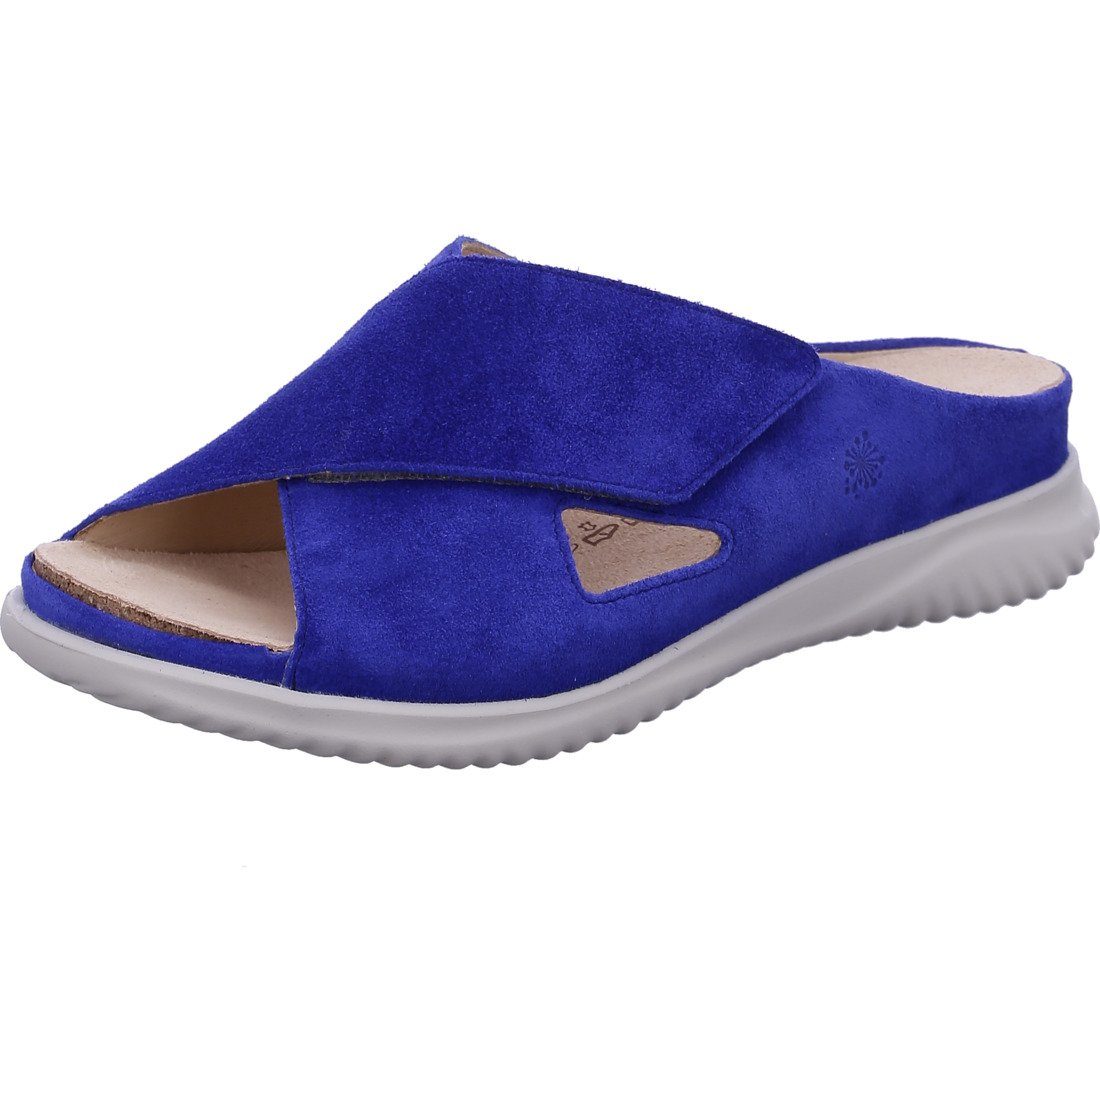 Hartjes Hartjes Schuhe, Pantolette Breeze - Velours Pantolette blau 048721